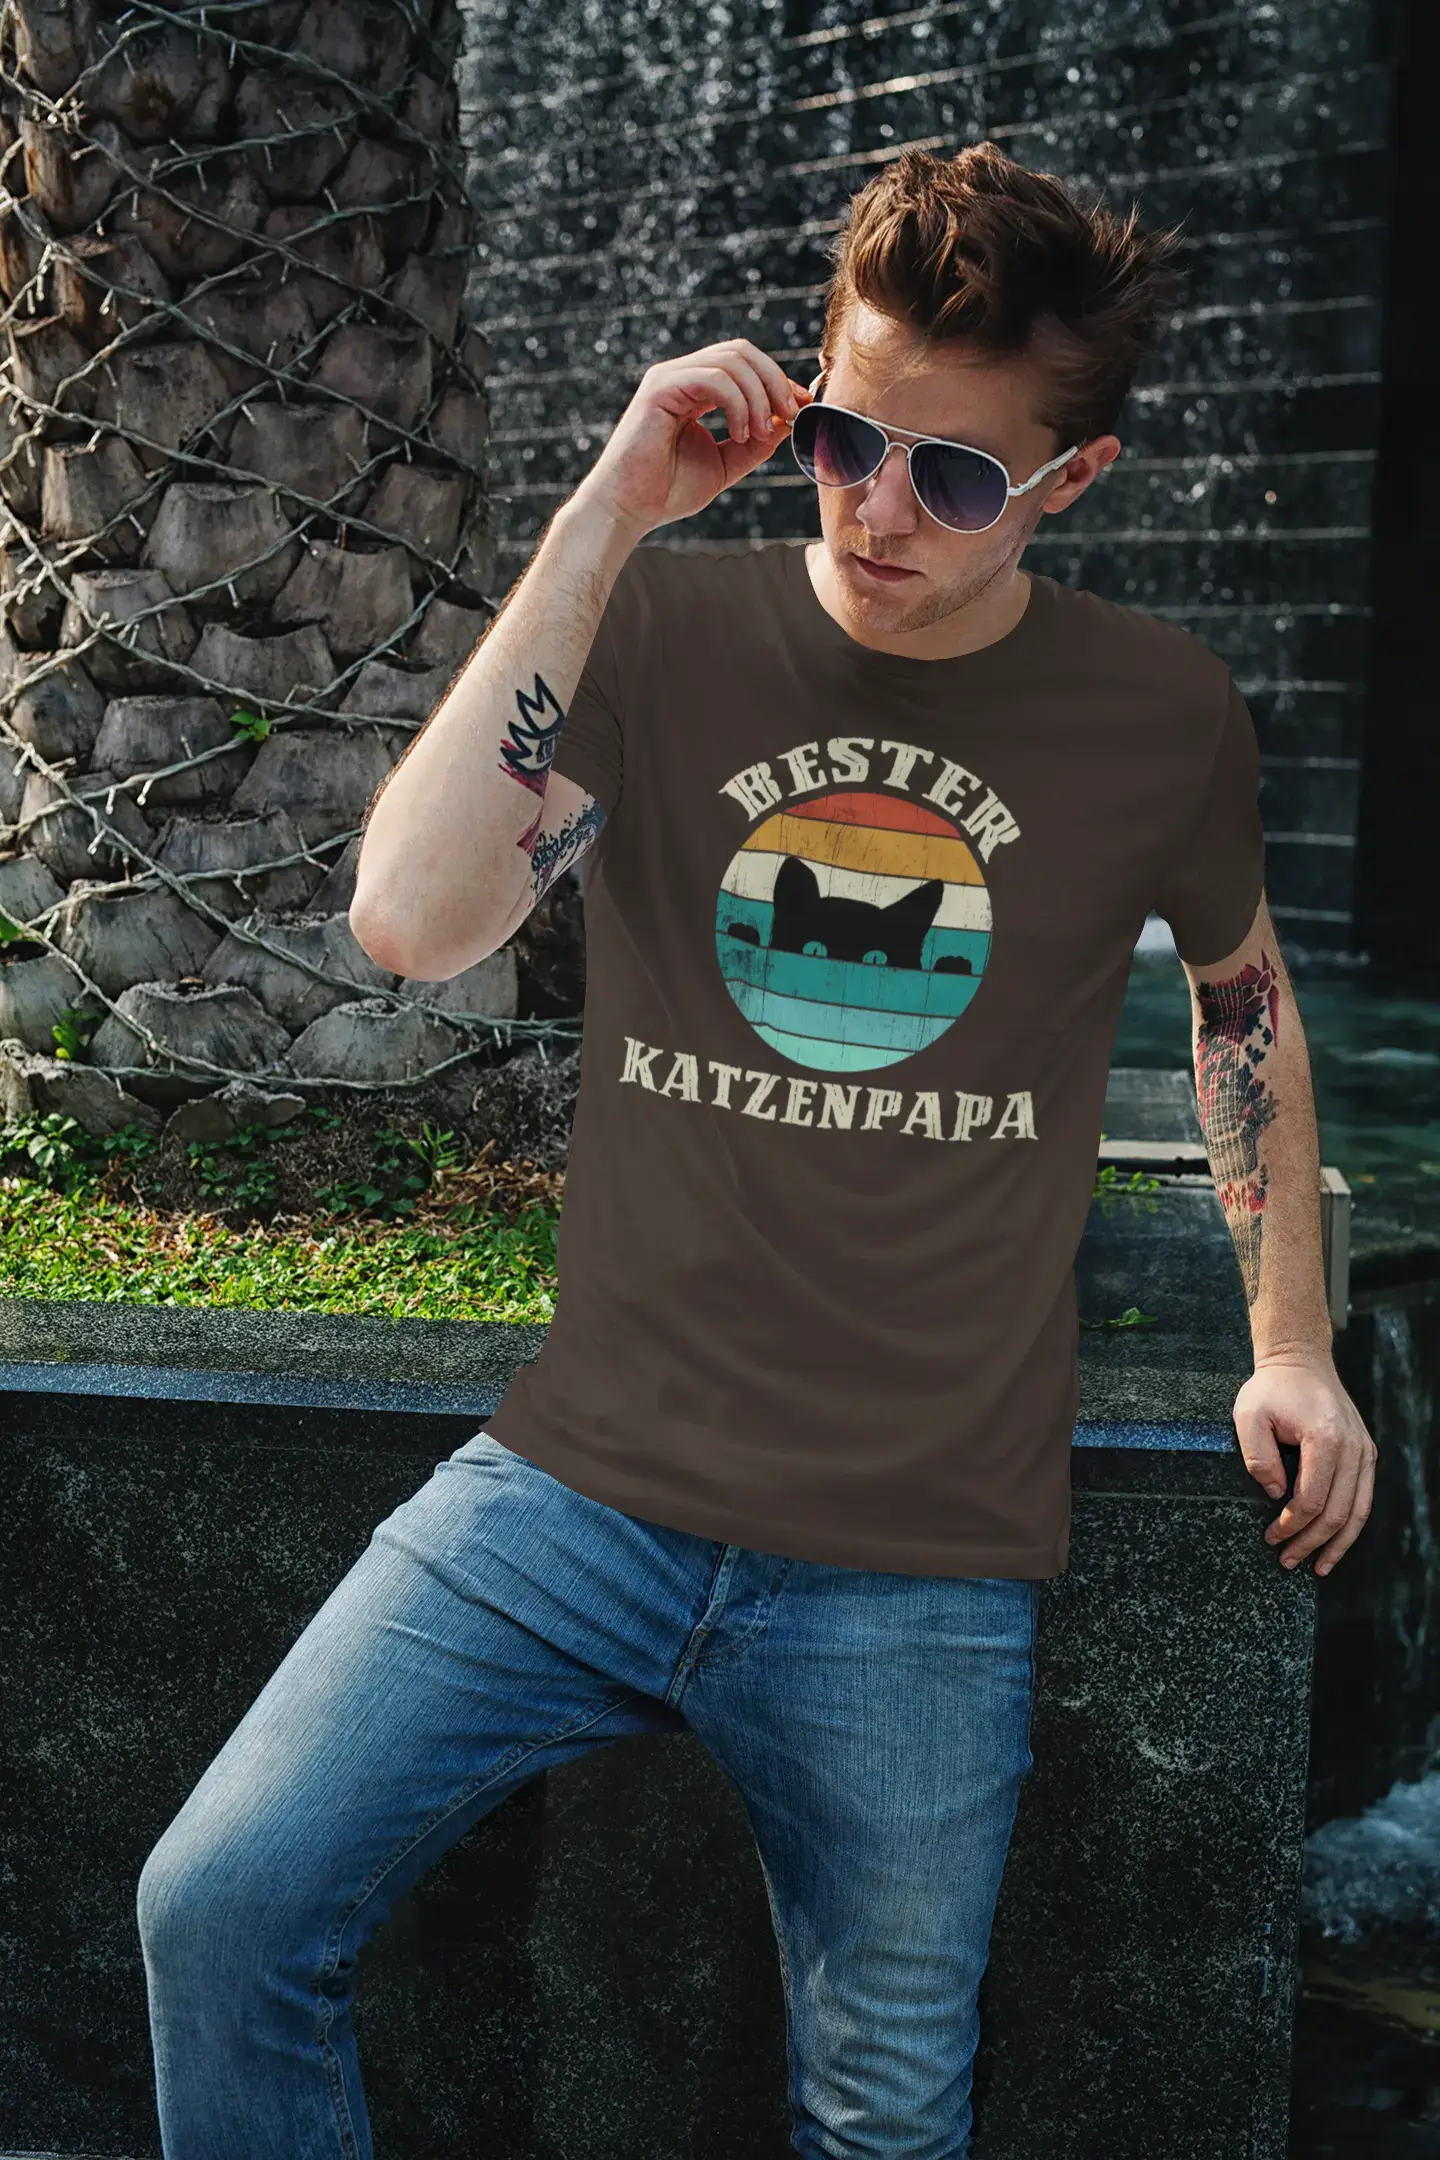 Men's Graphic T-Shirt Bester Katzenpapa Gift Idea